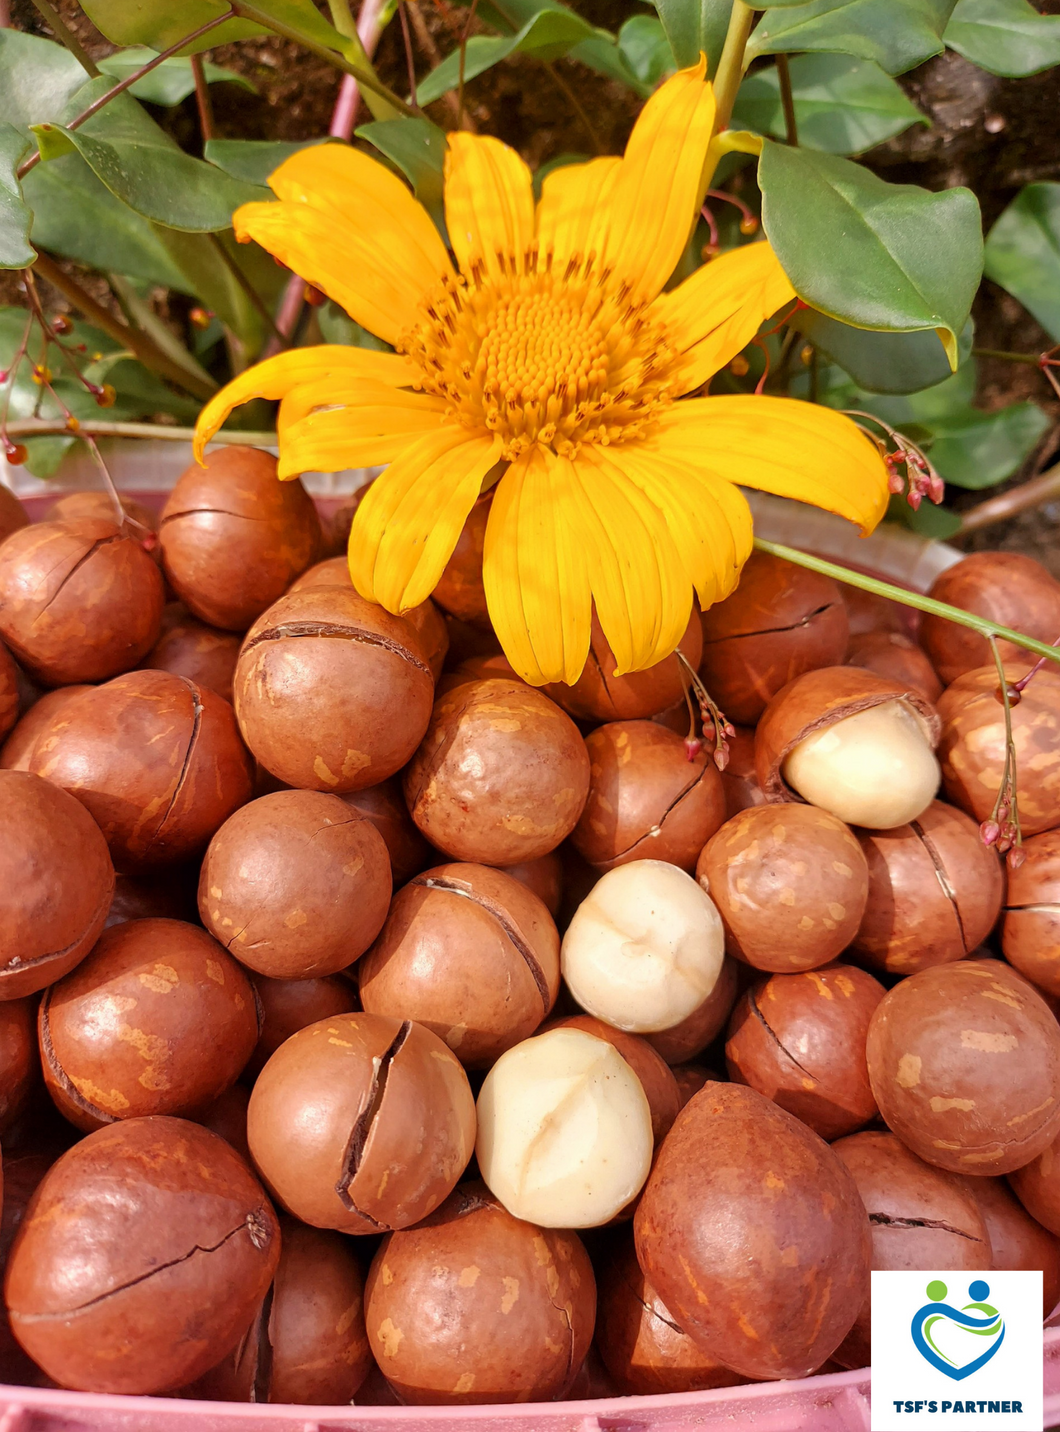 579 Thu-fam Macadamia Nuts/Hạt Macca/マカダミアナッツ (Ms. Le, Duc Trong)200g